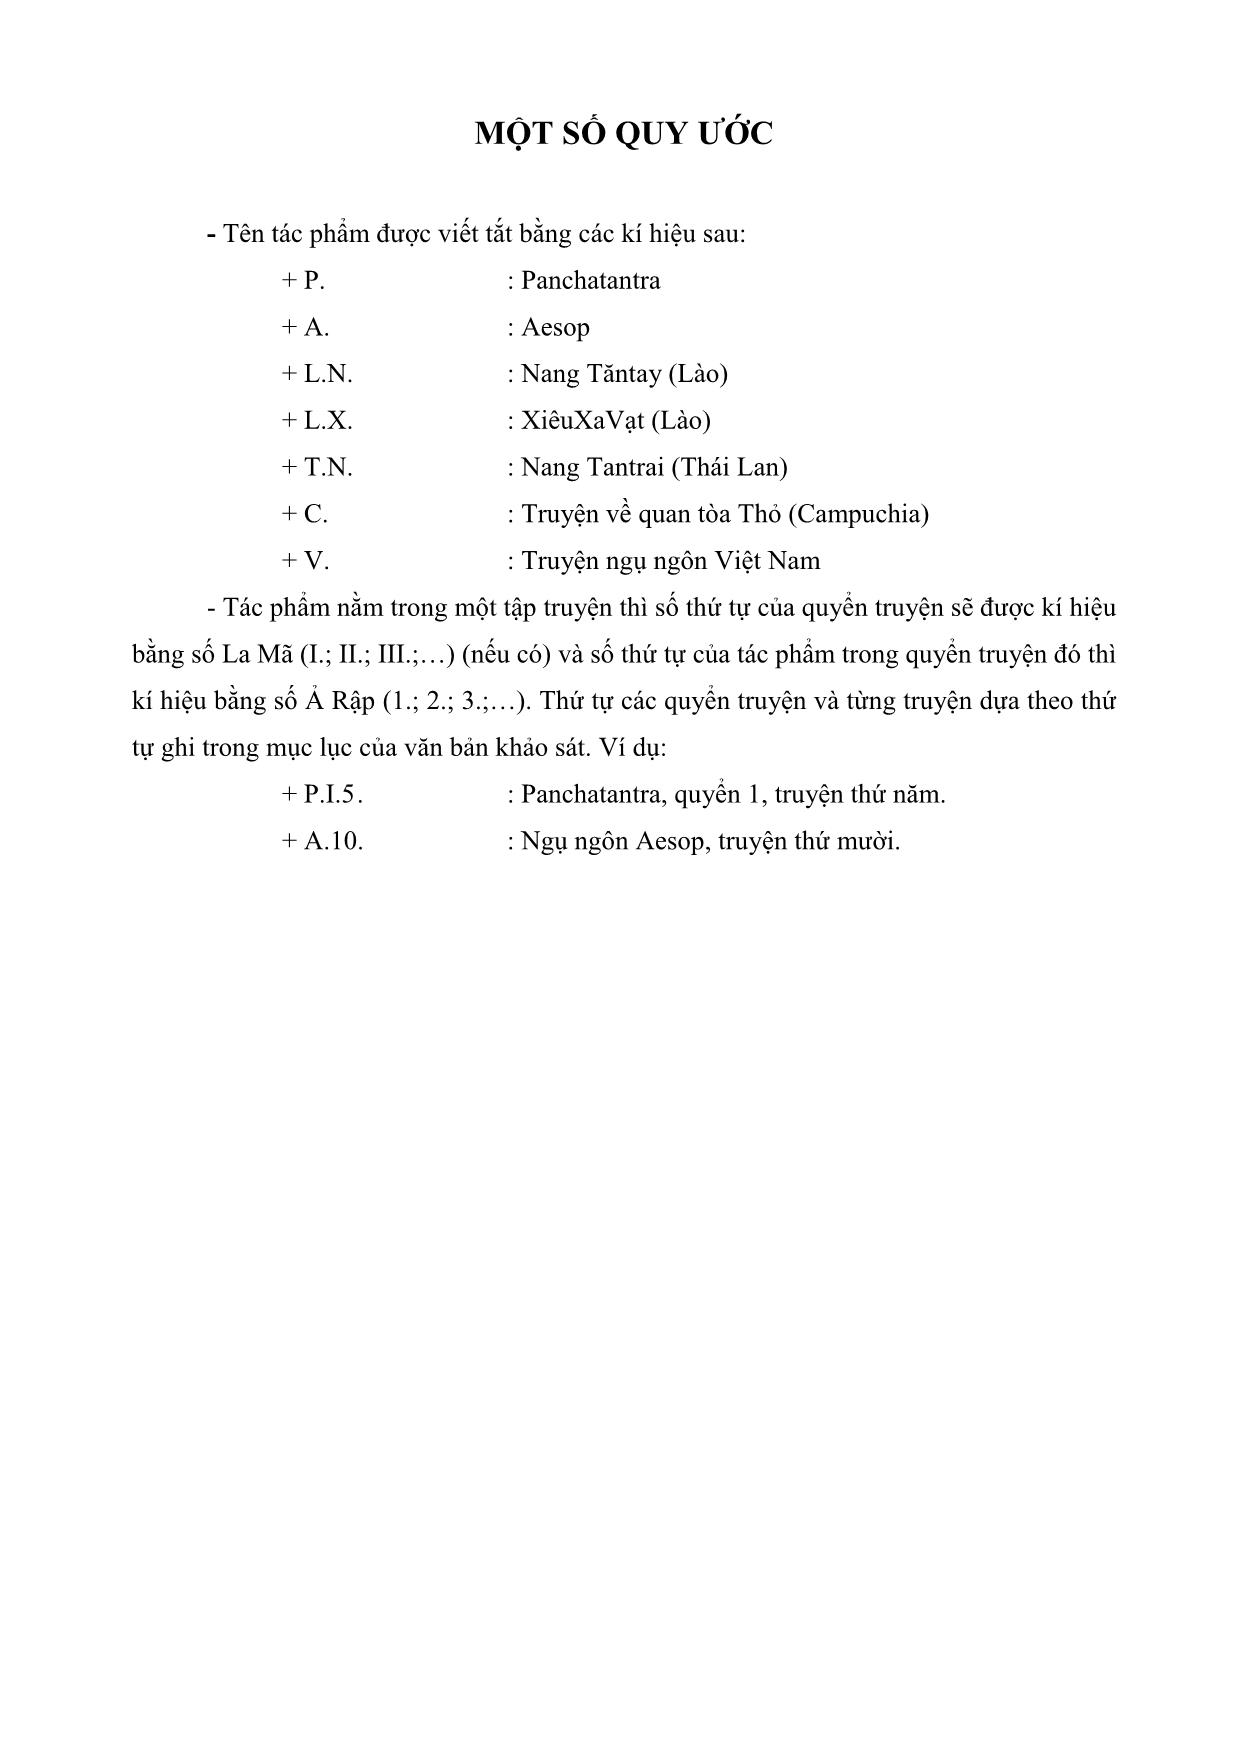 Nghiên cứu so sánh ngụ ngôn Ấn Độ (Panchatantra) với ngụ ngôn Hy Lạp (Aesop) và ngụ ngôn Đông Nam Á (Việt Nam, Lào, Campuchia, Thái Lan) trang 4